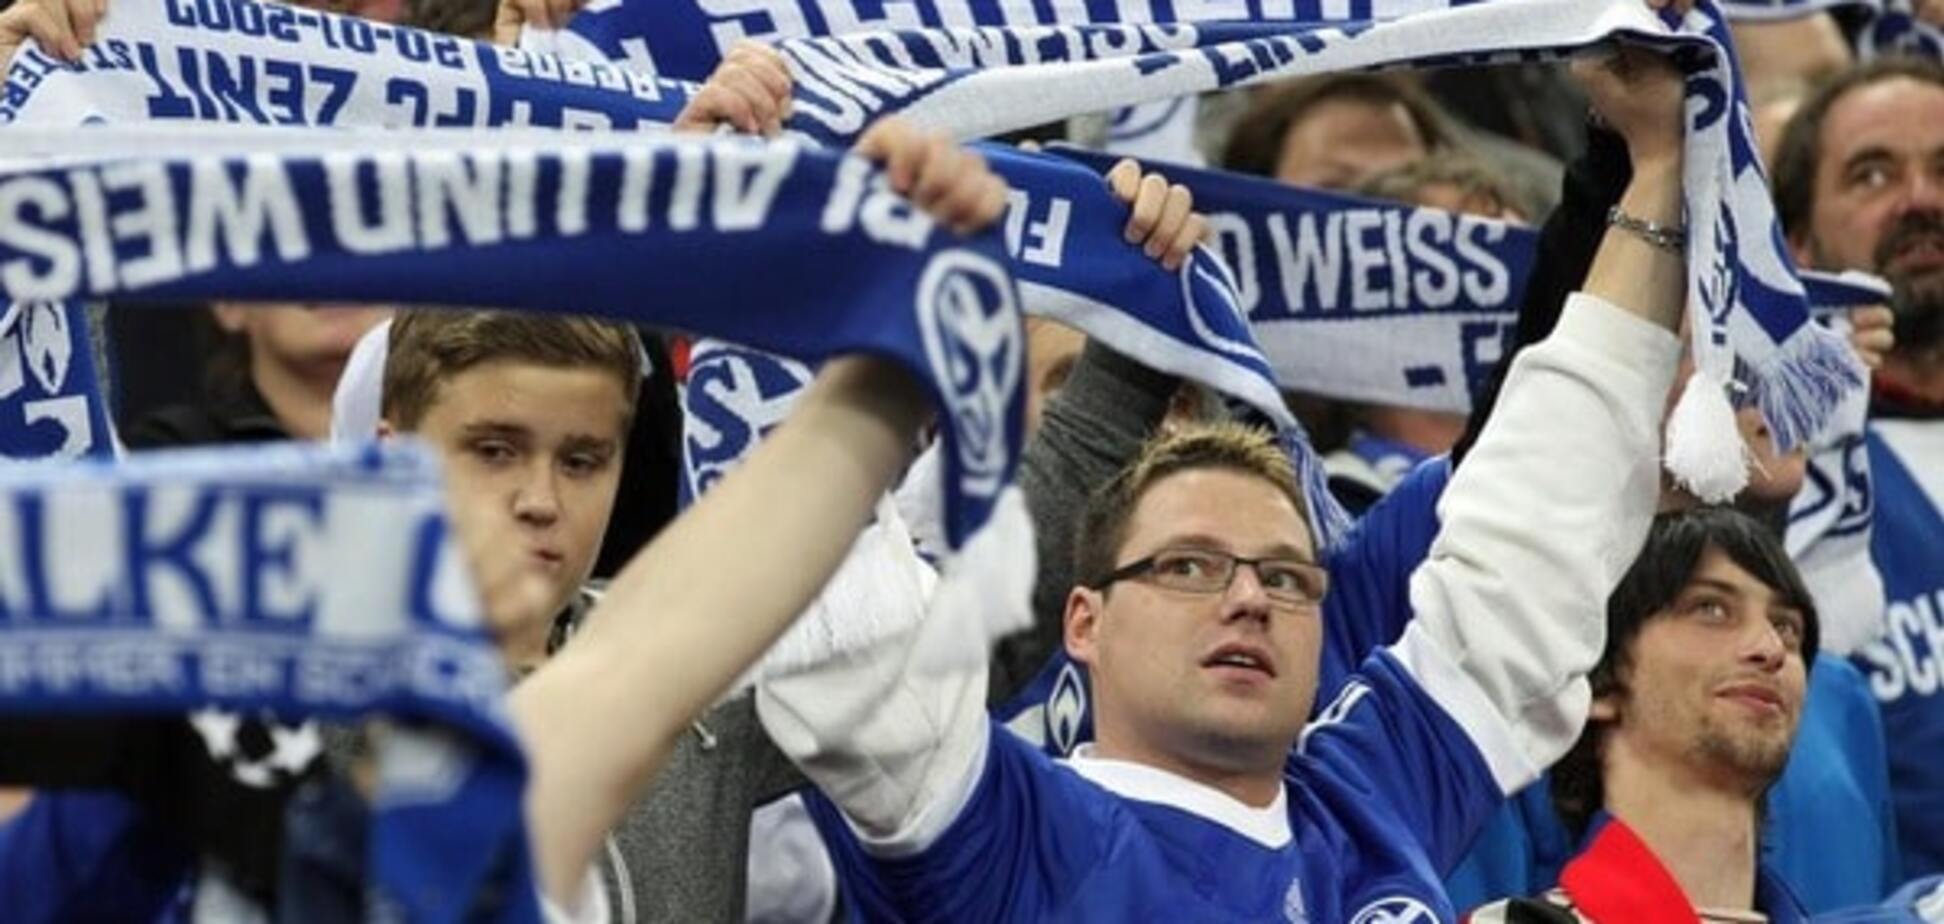 'Краще не потикатися': німецьких фанатів попередили про небезпеку у Львові перед матчем із 'Шахтарем'